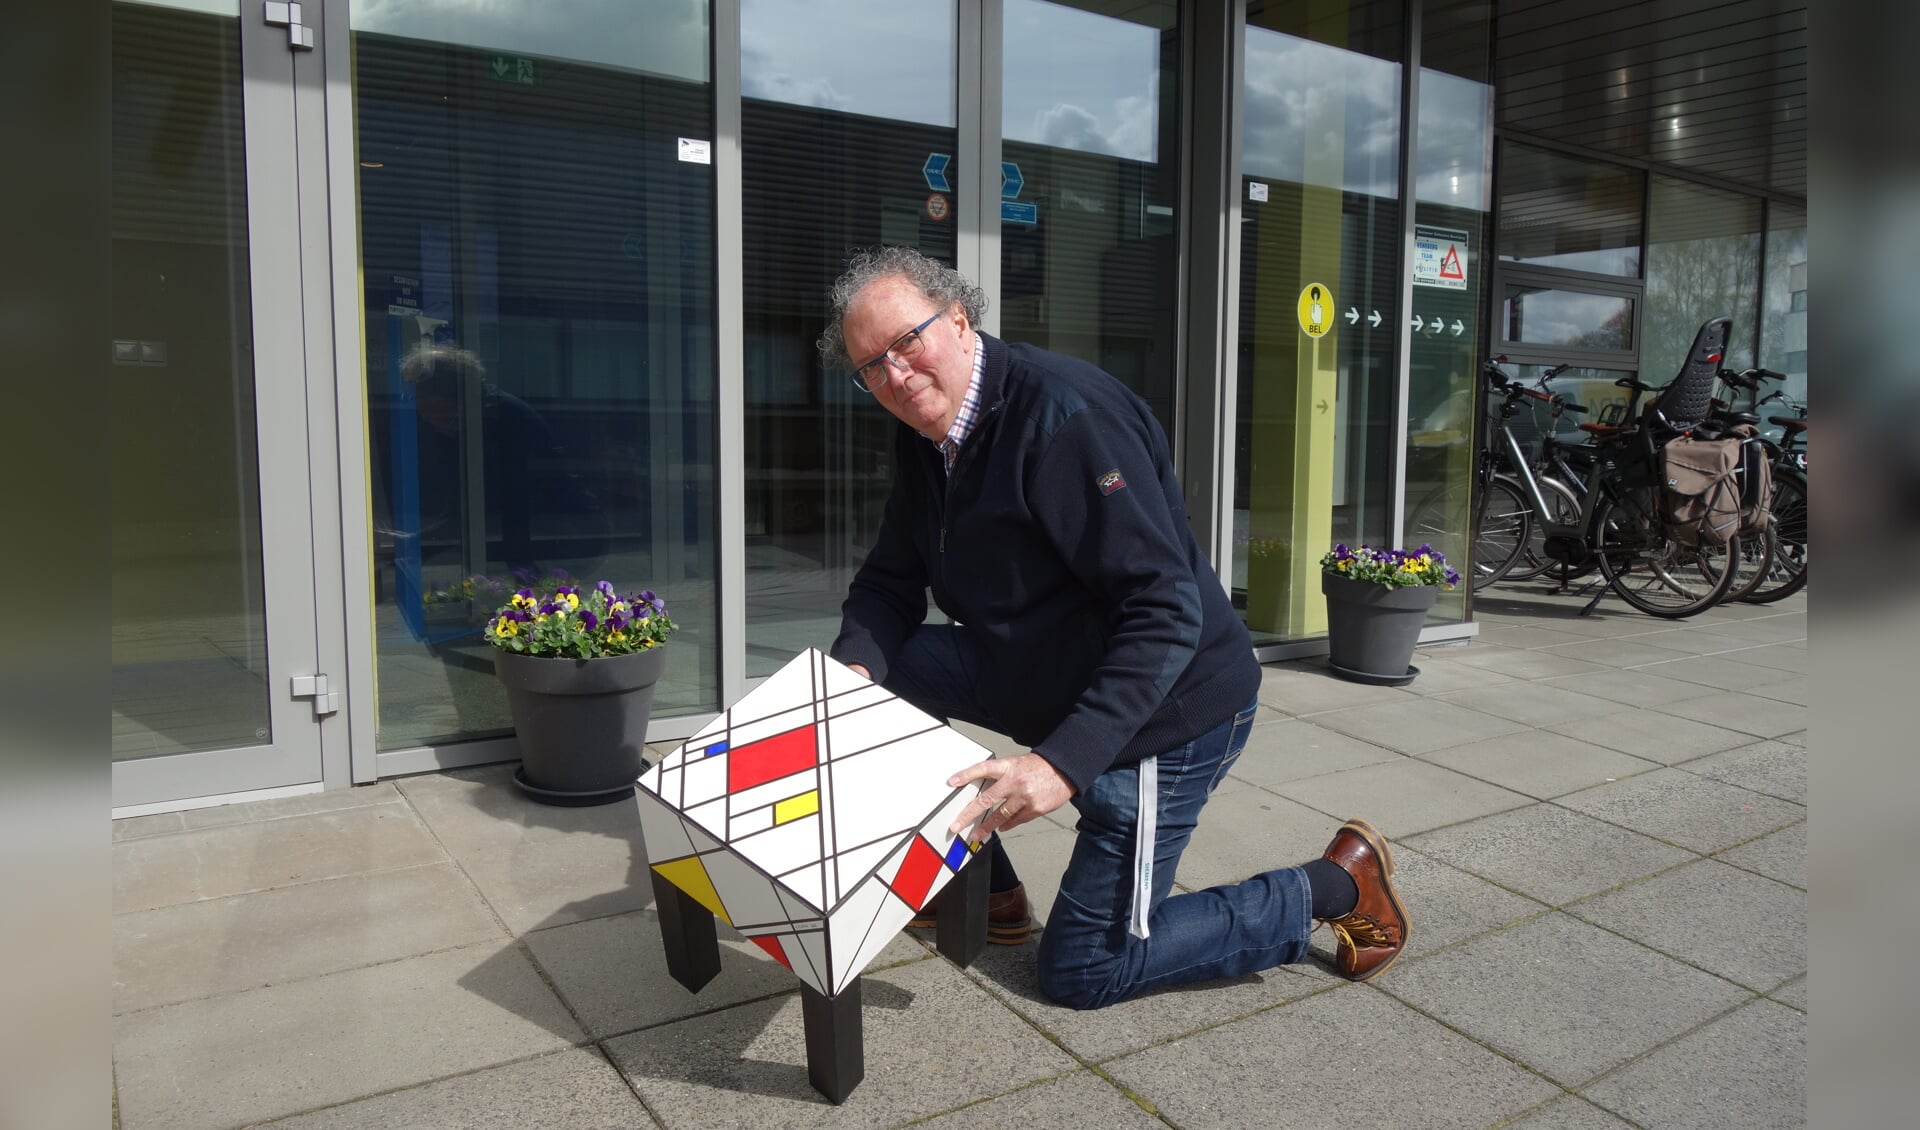 Henk ten Dolle met krukje dat aanleiding was voor de tentoonstelling die vanaf 20 april te zien is in Winterswijk. Foto: Clemens Bielen